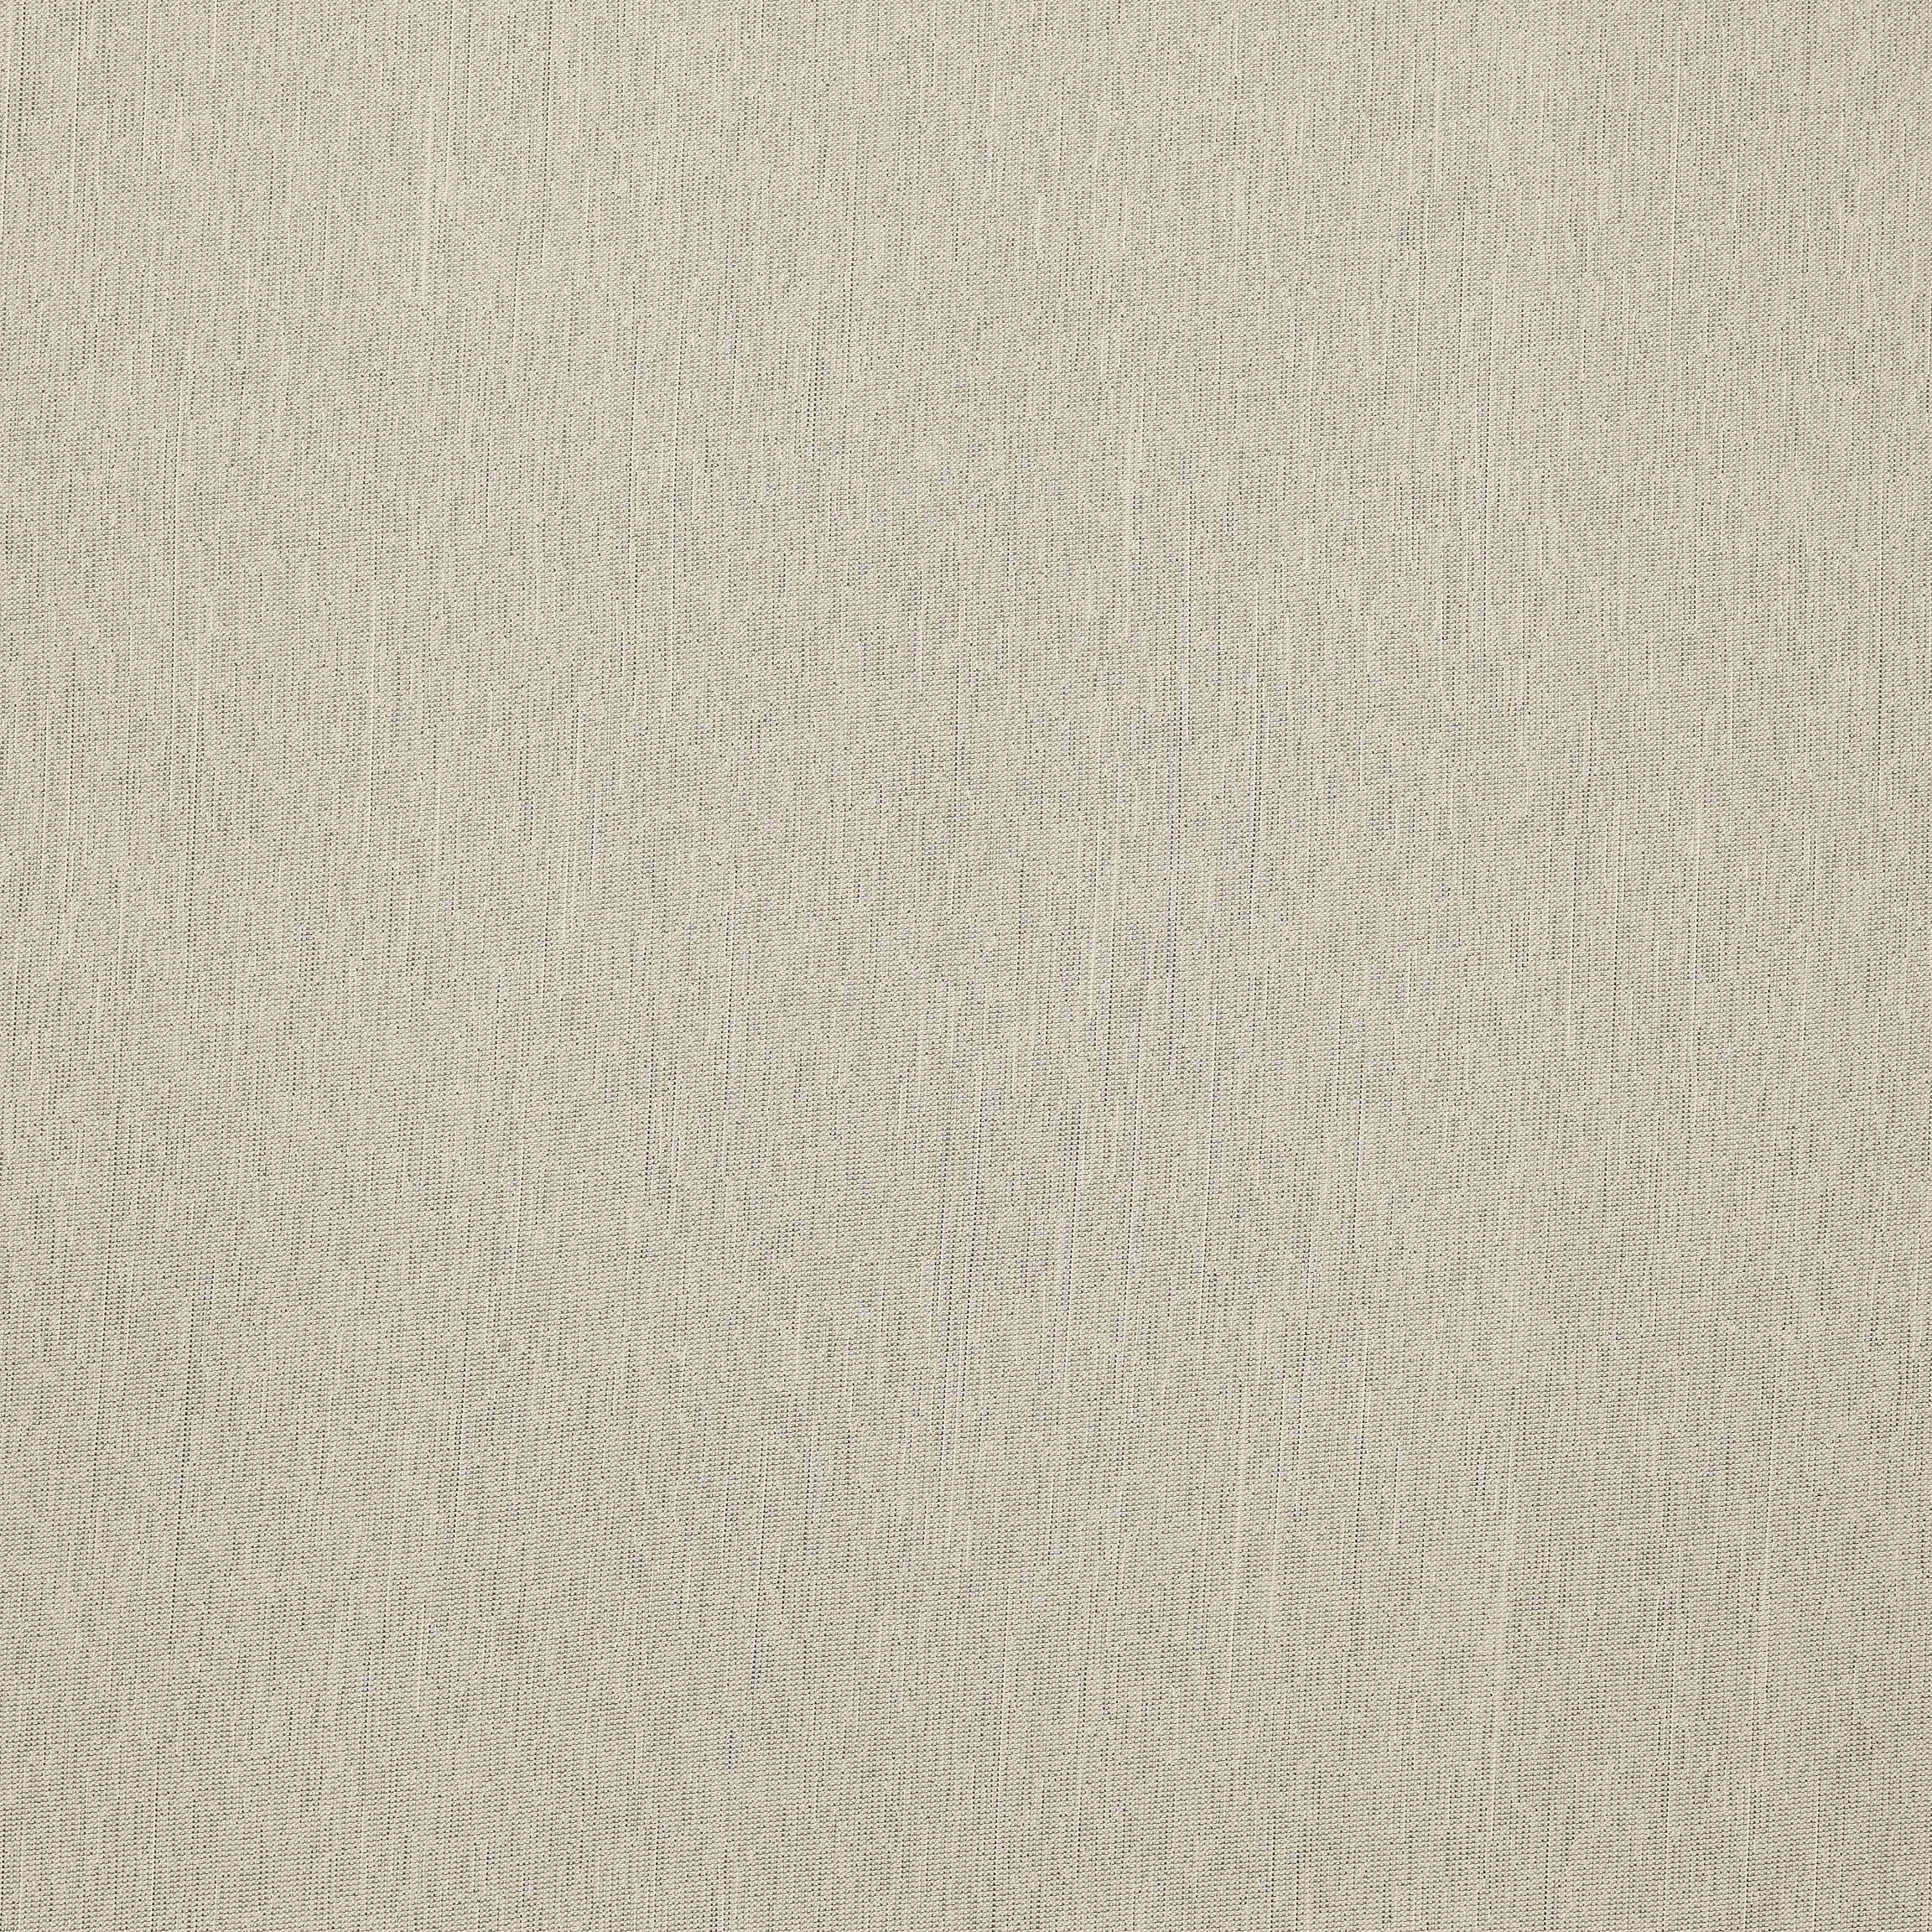  Портьерная ткань FOSCU GREY, ширина 300 см  - Фото